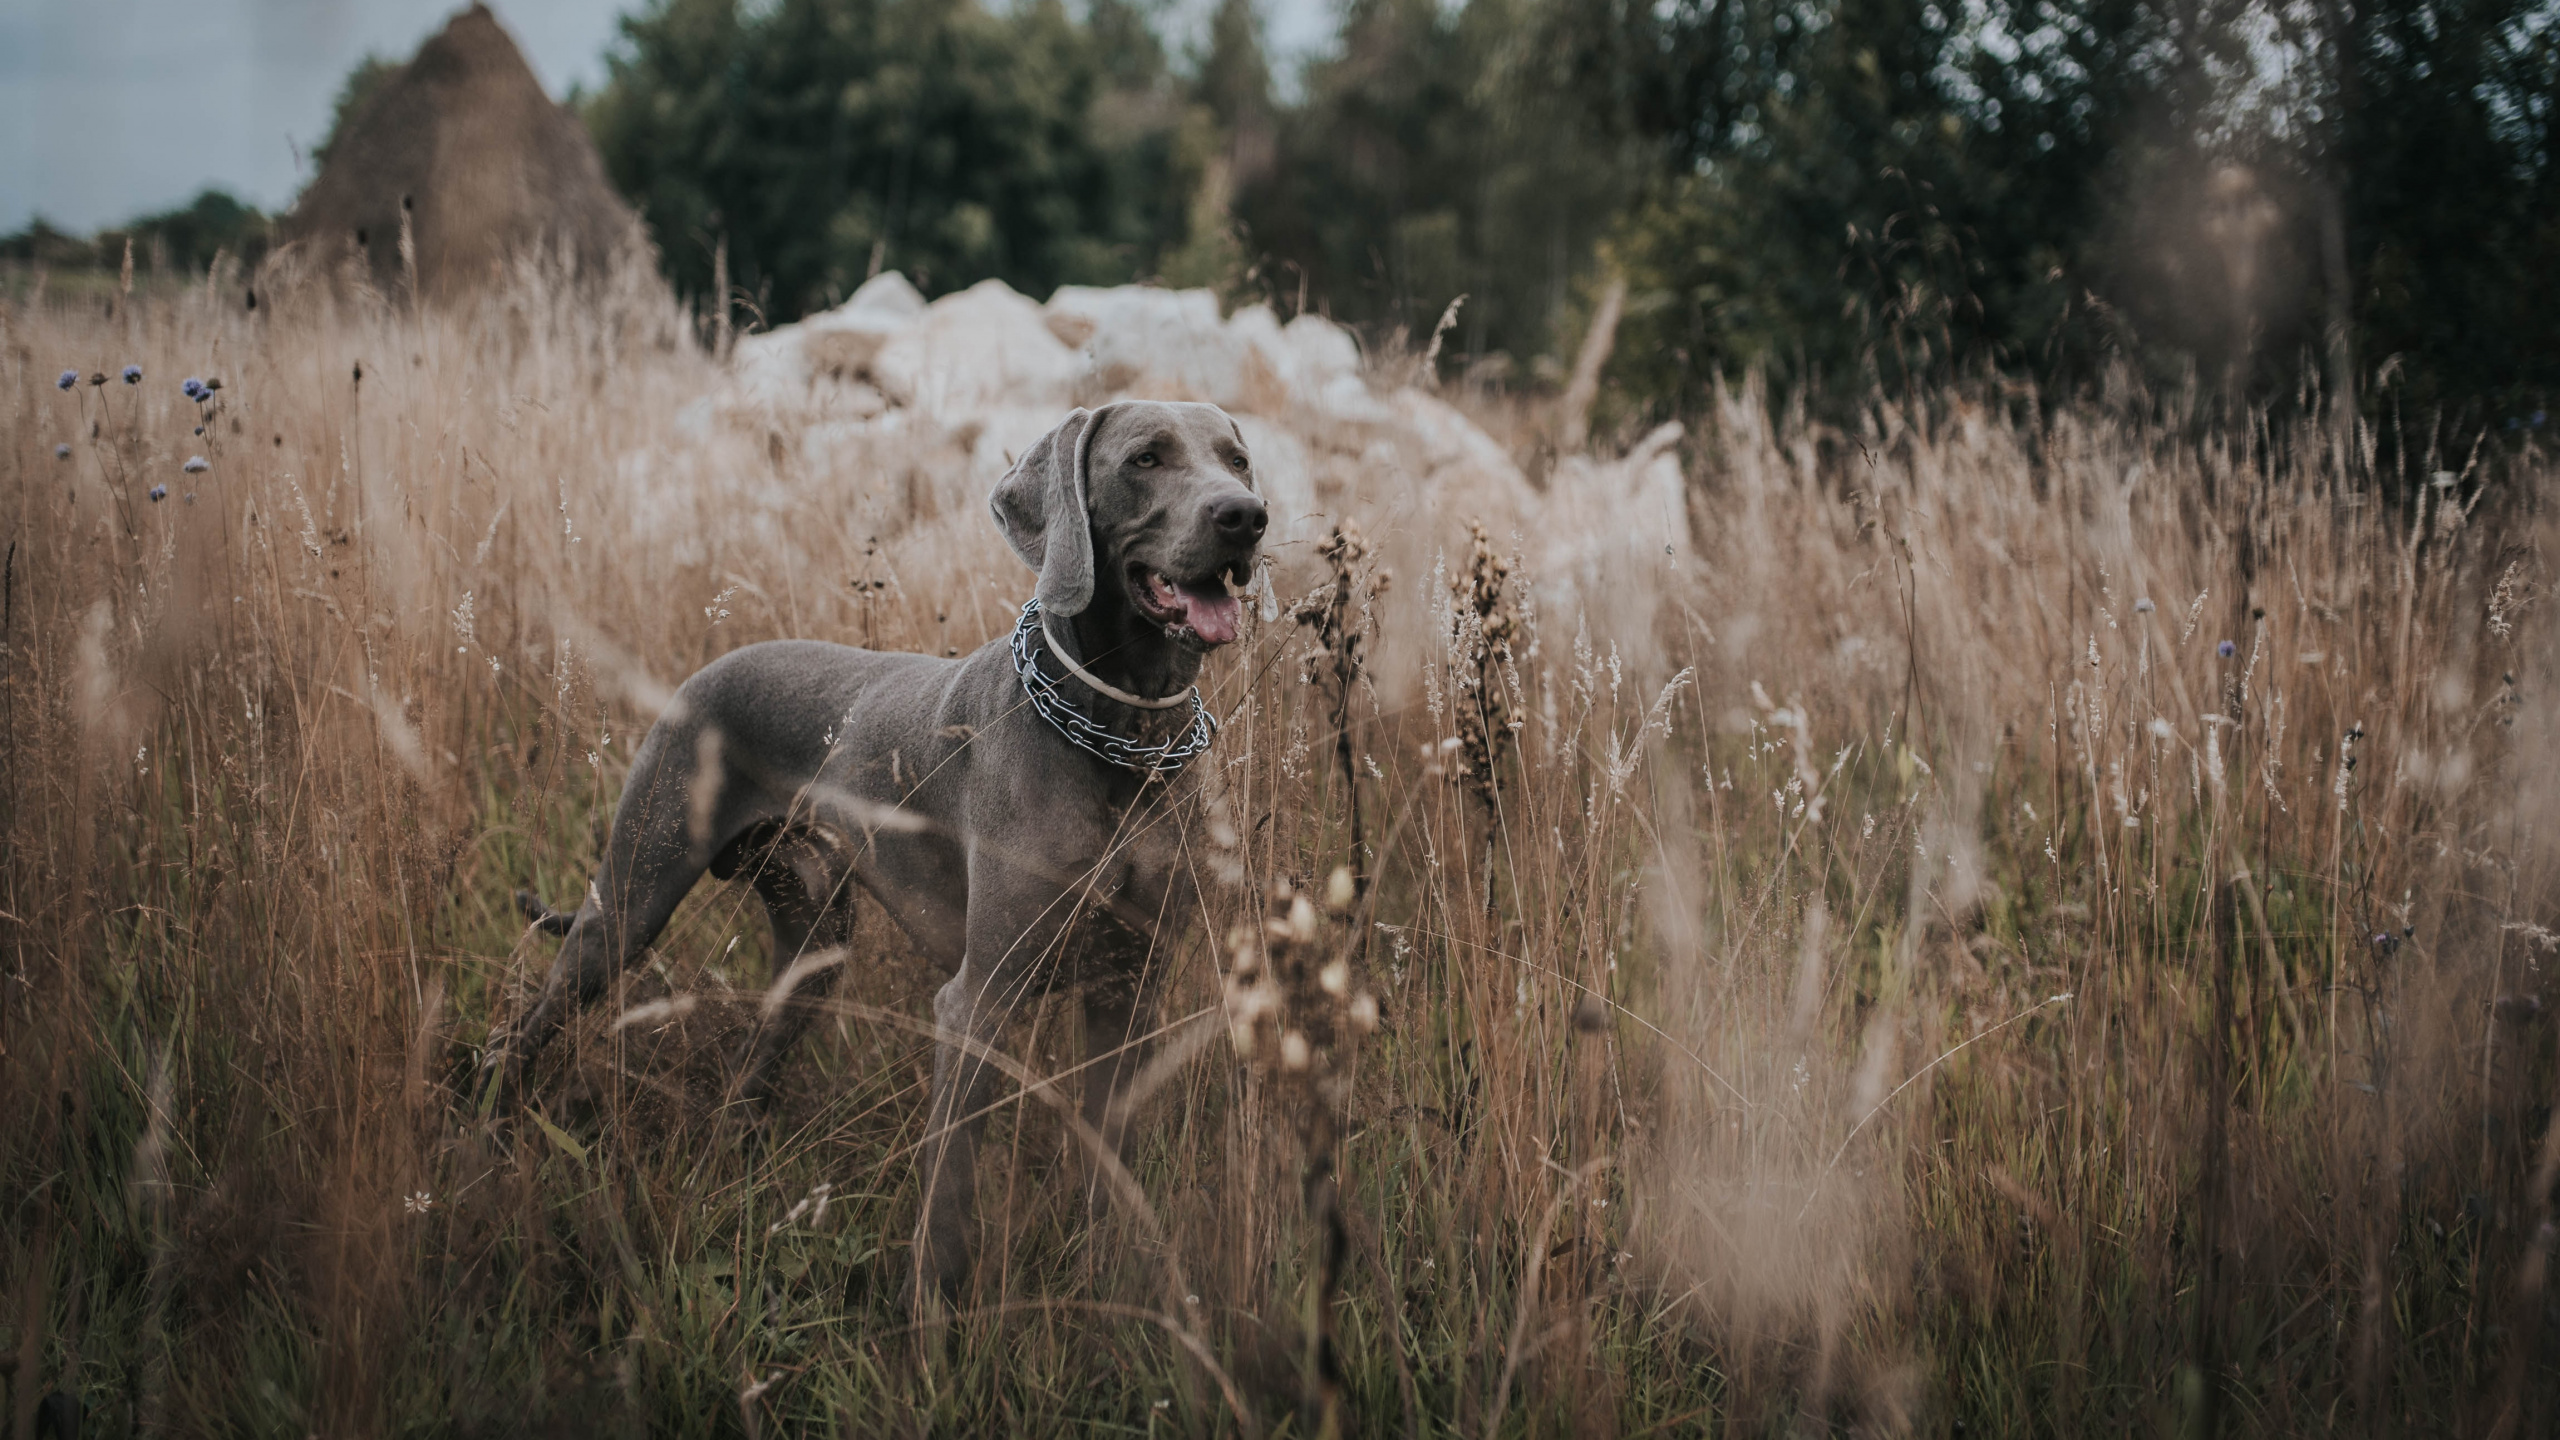 威马, 品种的狗, 体育组, 狩猎狗, 草 壁纸 2560x1440 允许